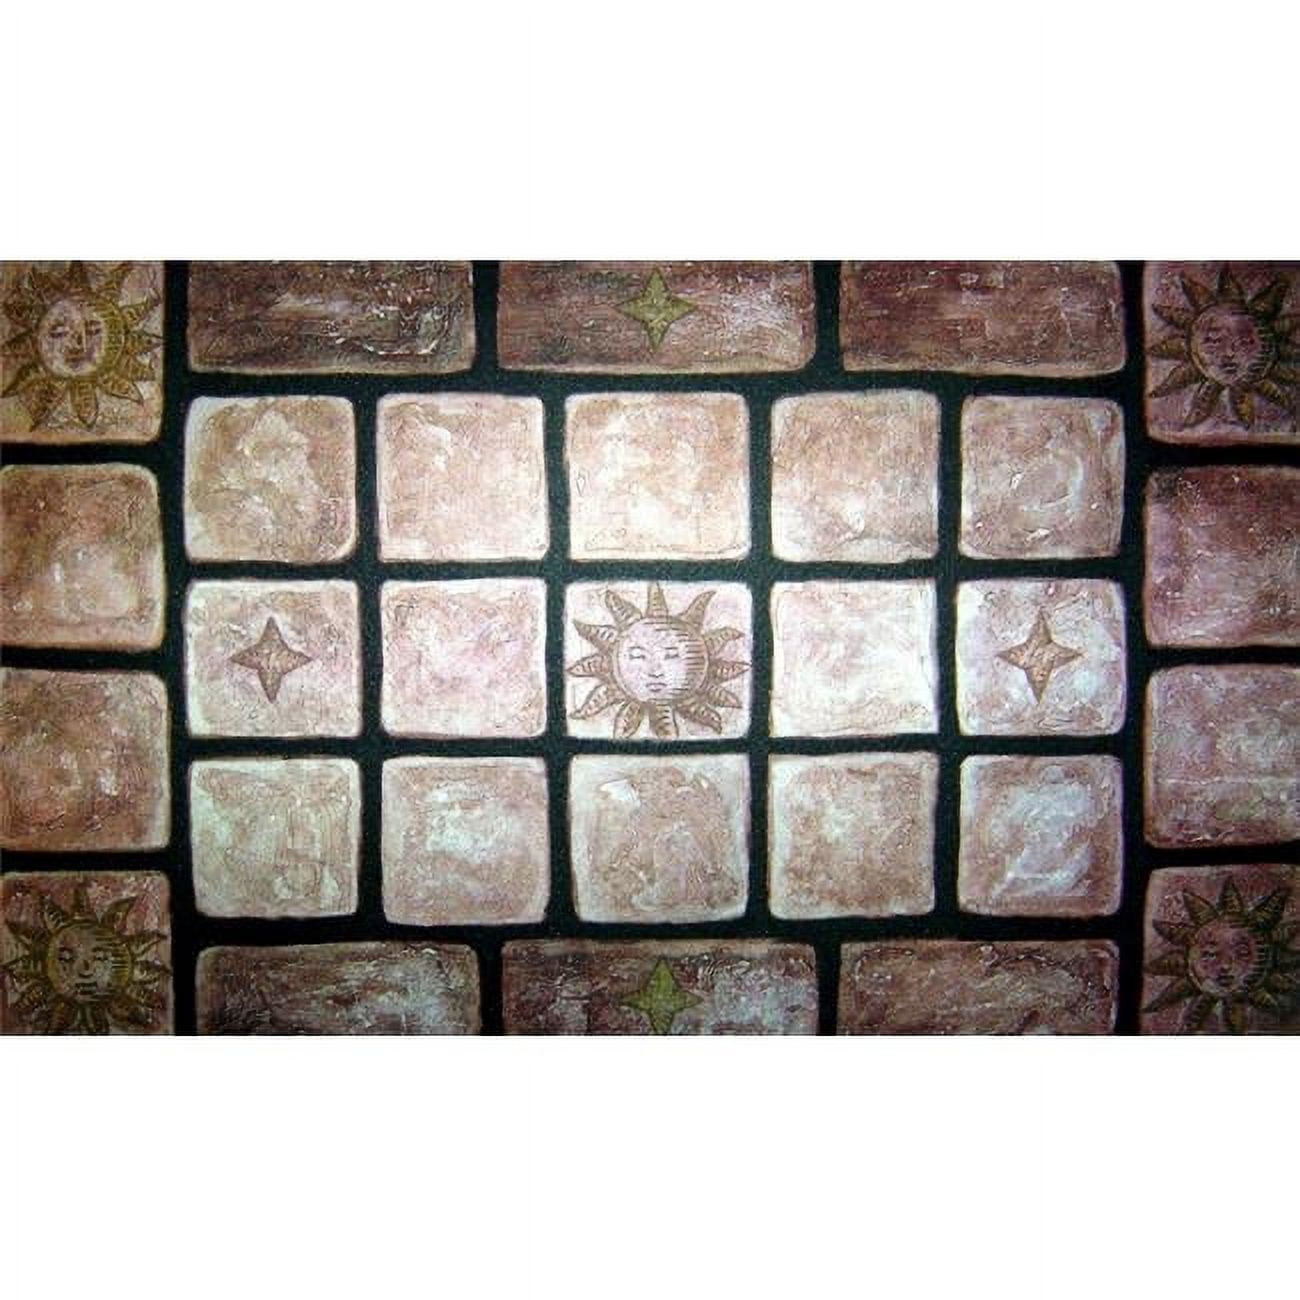 Cpr014 Decorative Tiles Doormat Rug - 18 X 30 In.